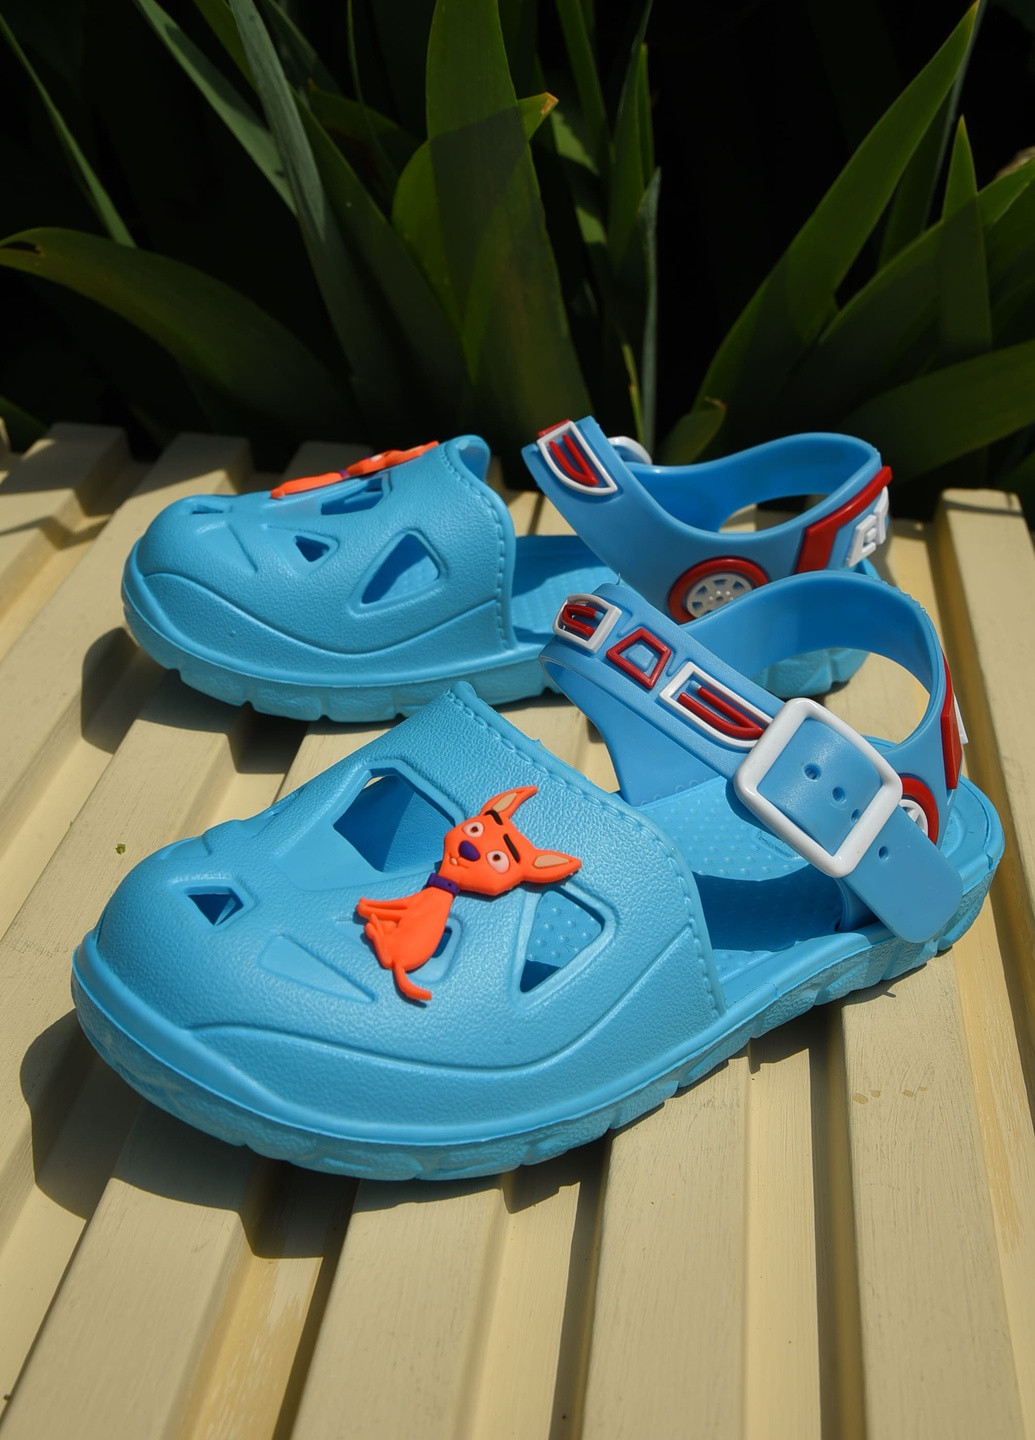 Голубые пляжные сандали детские пена для мальчика голубого цвета Let's Shop с ремешком